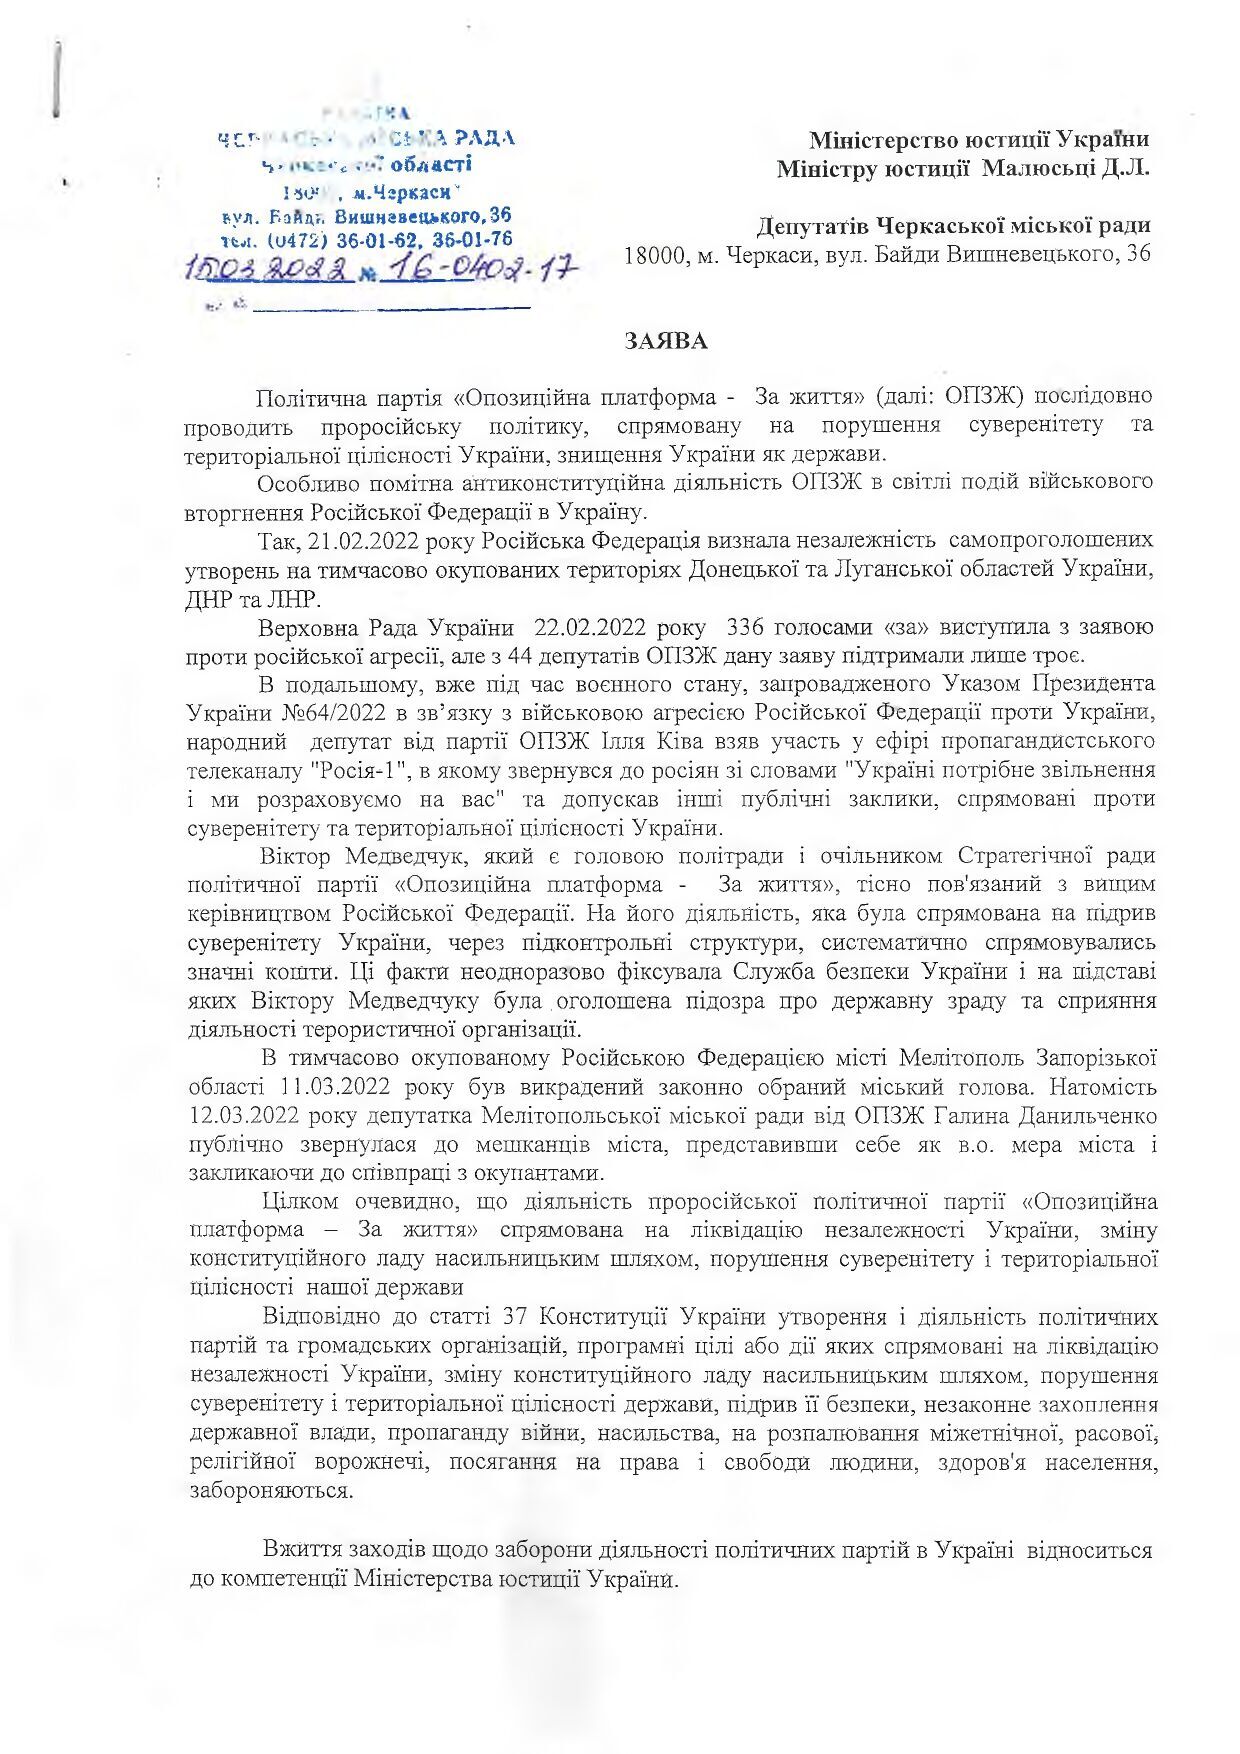 Обращение Черкасского городского совета в Минюст о запрете деятельности ОПЗЖ